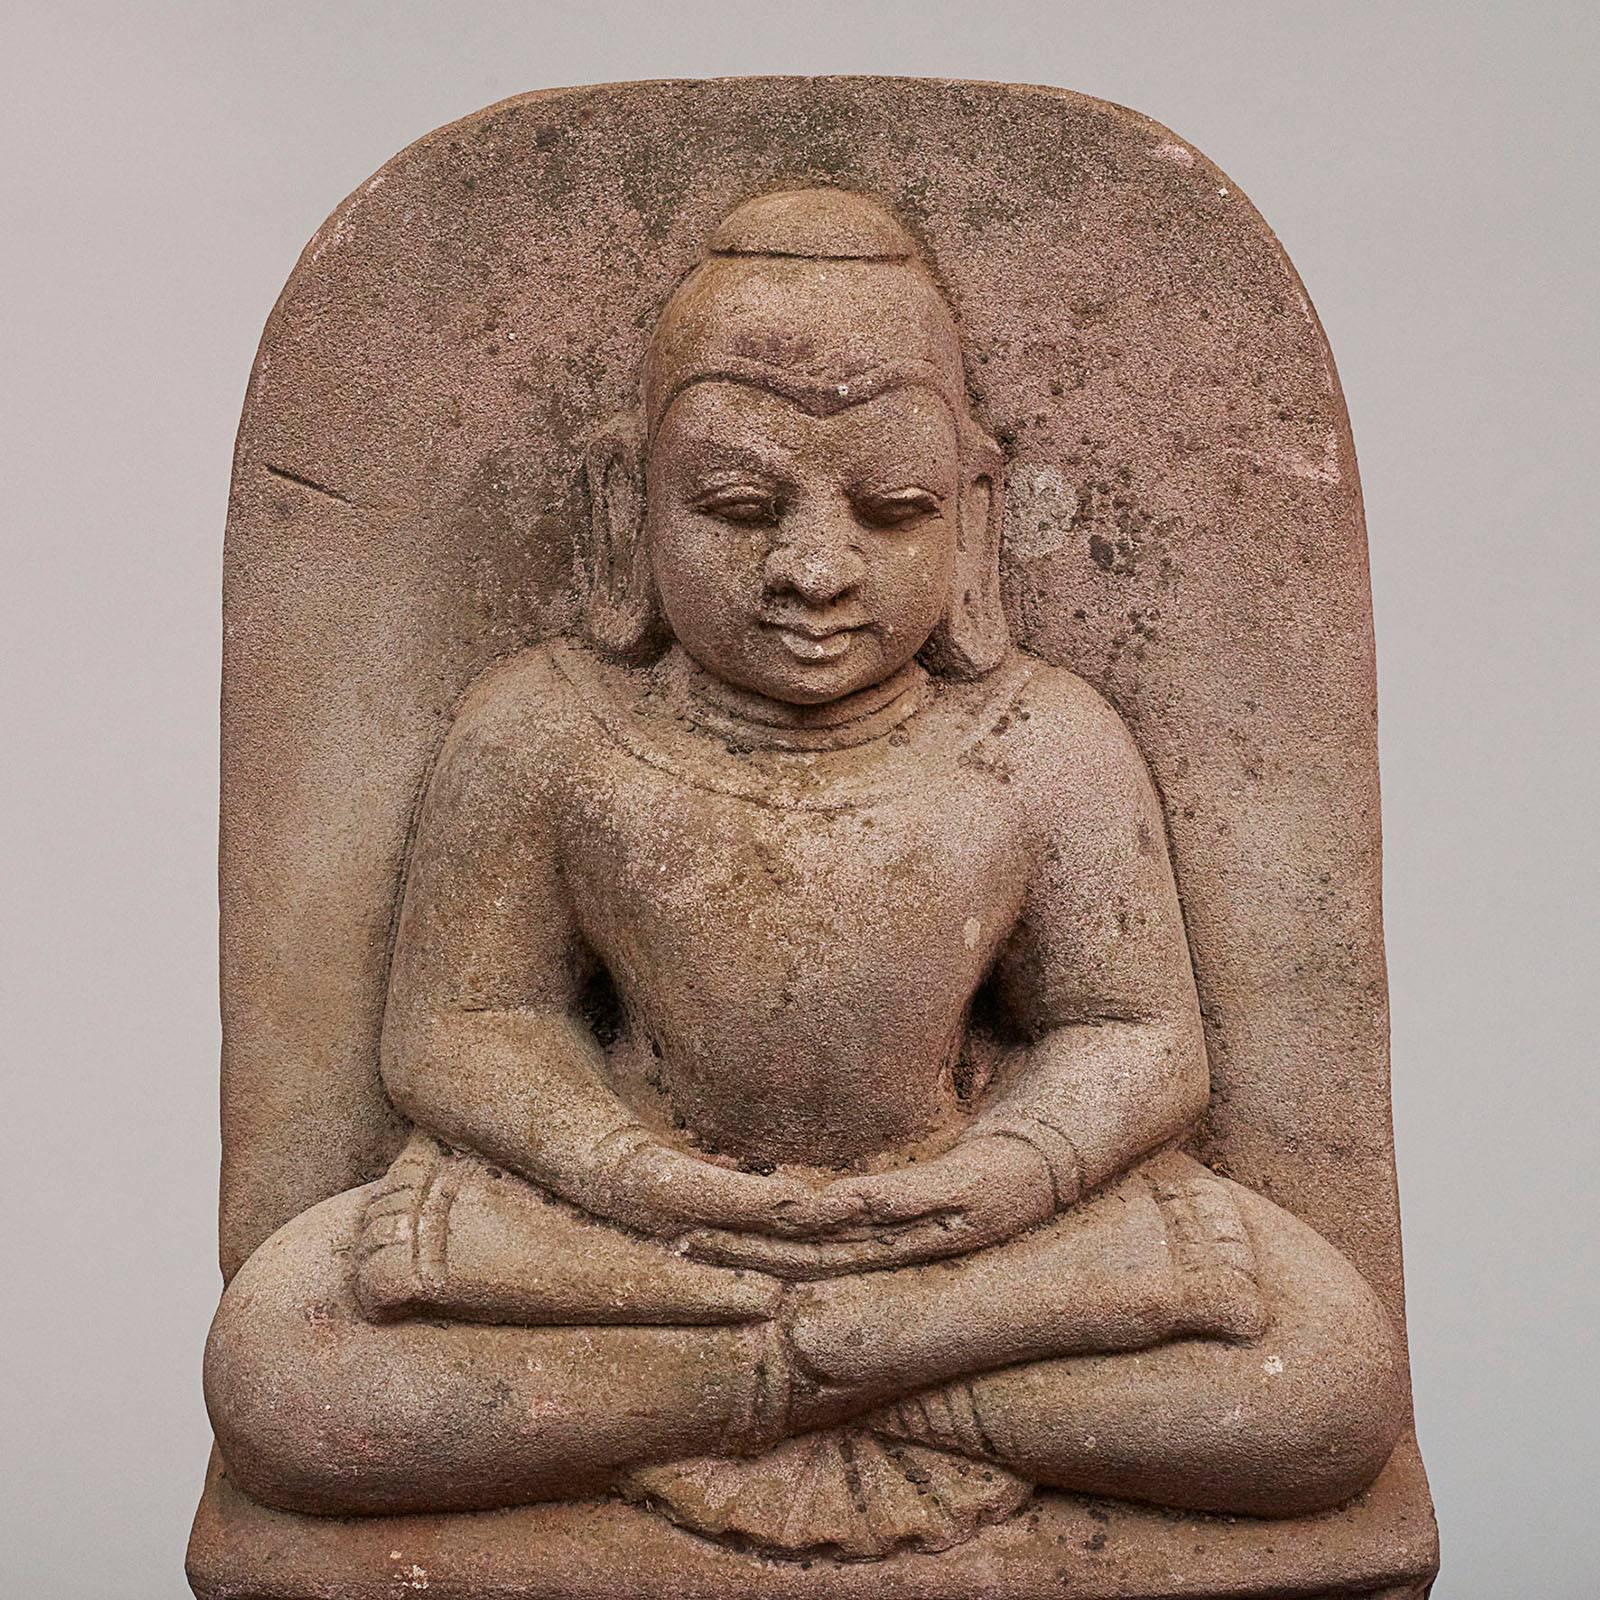 Un puissant bouddha birman en grès sculpté, vers 1600-1700.
En méditation, les jambes et les bras croisés, appelé 